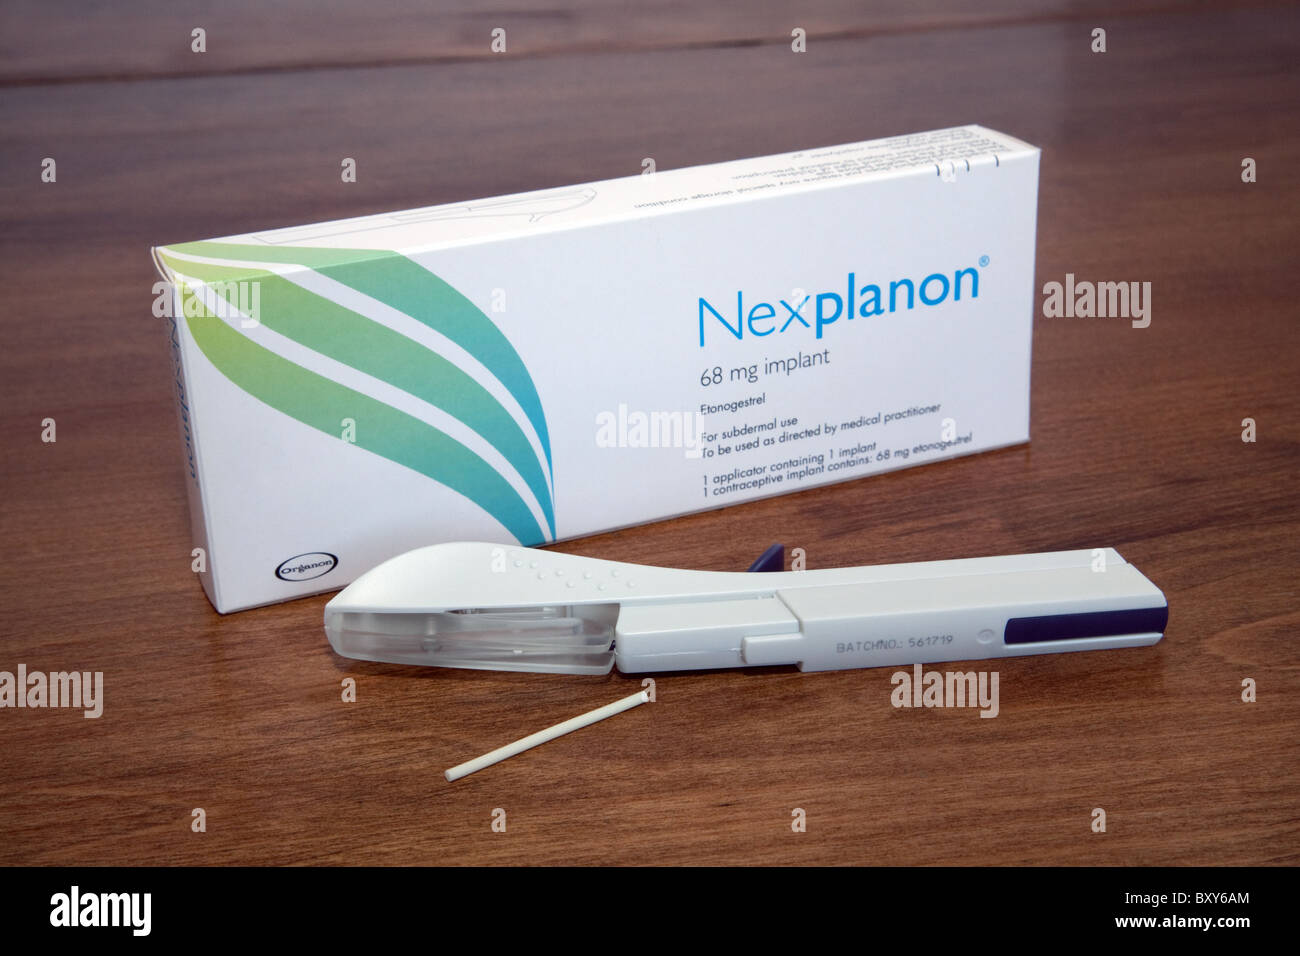 La femelle Nexplanon implant contraceptif de longue durée de contraception réversible de longue durée d'action Banque D'Images